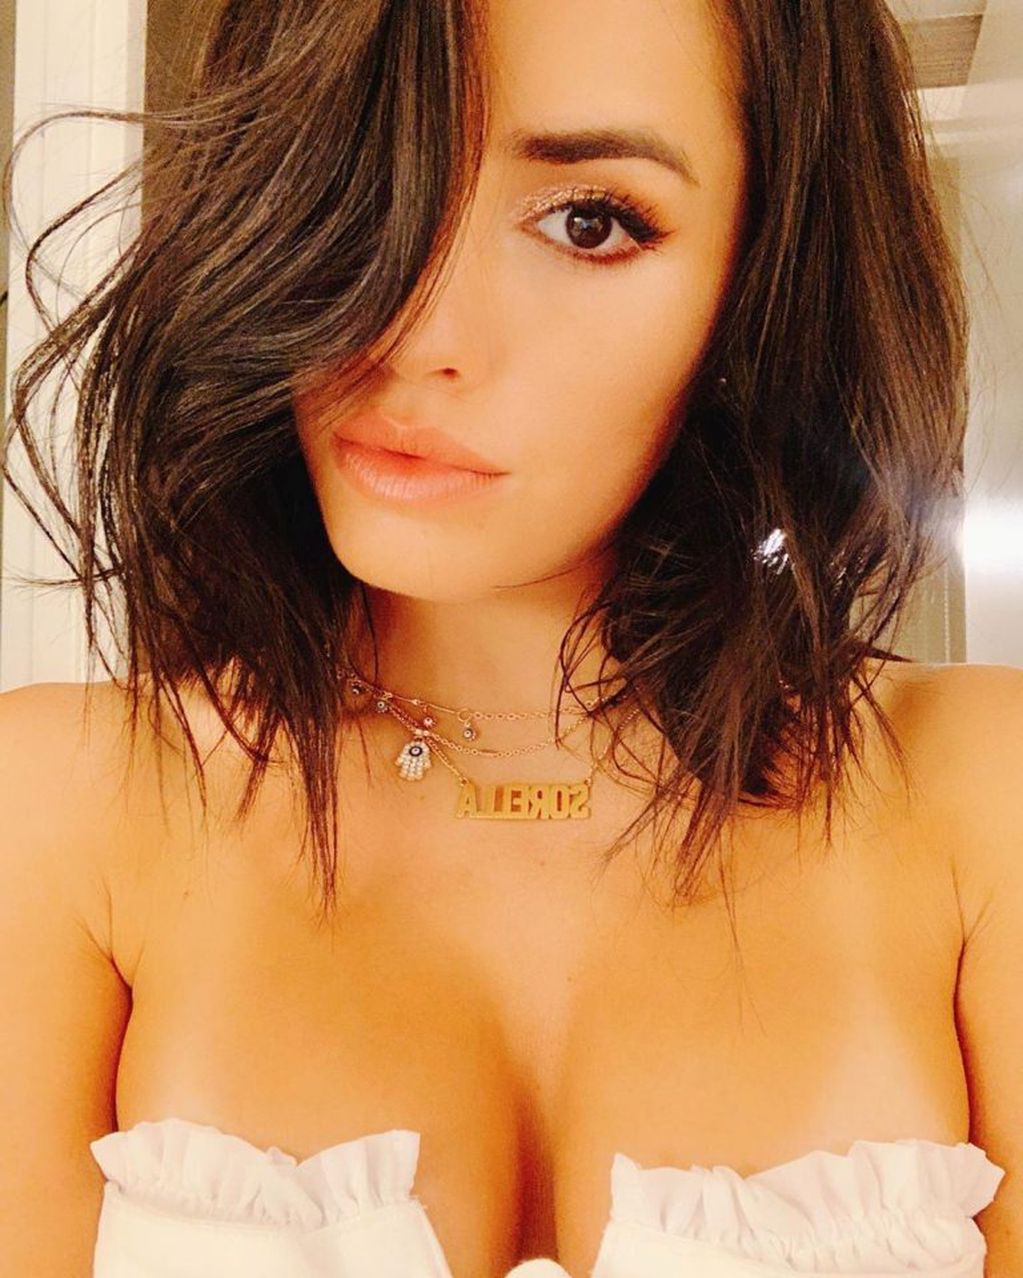 Lali Espósito posó en Instagram con una prenda blanca escotada (Foto: Instagram)